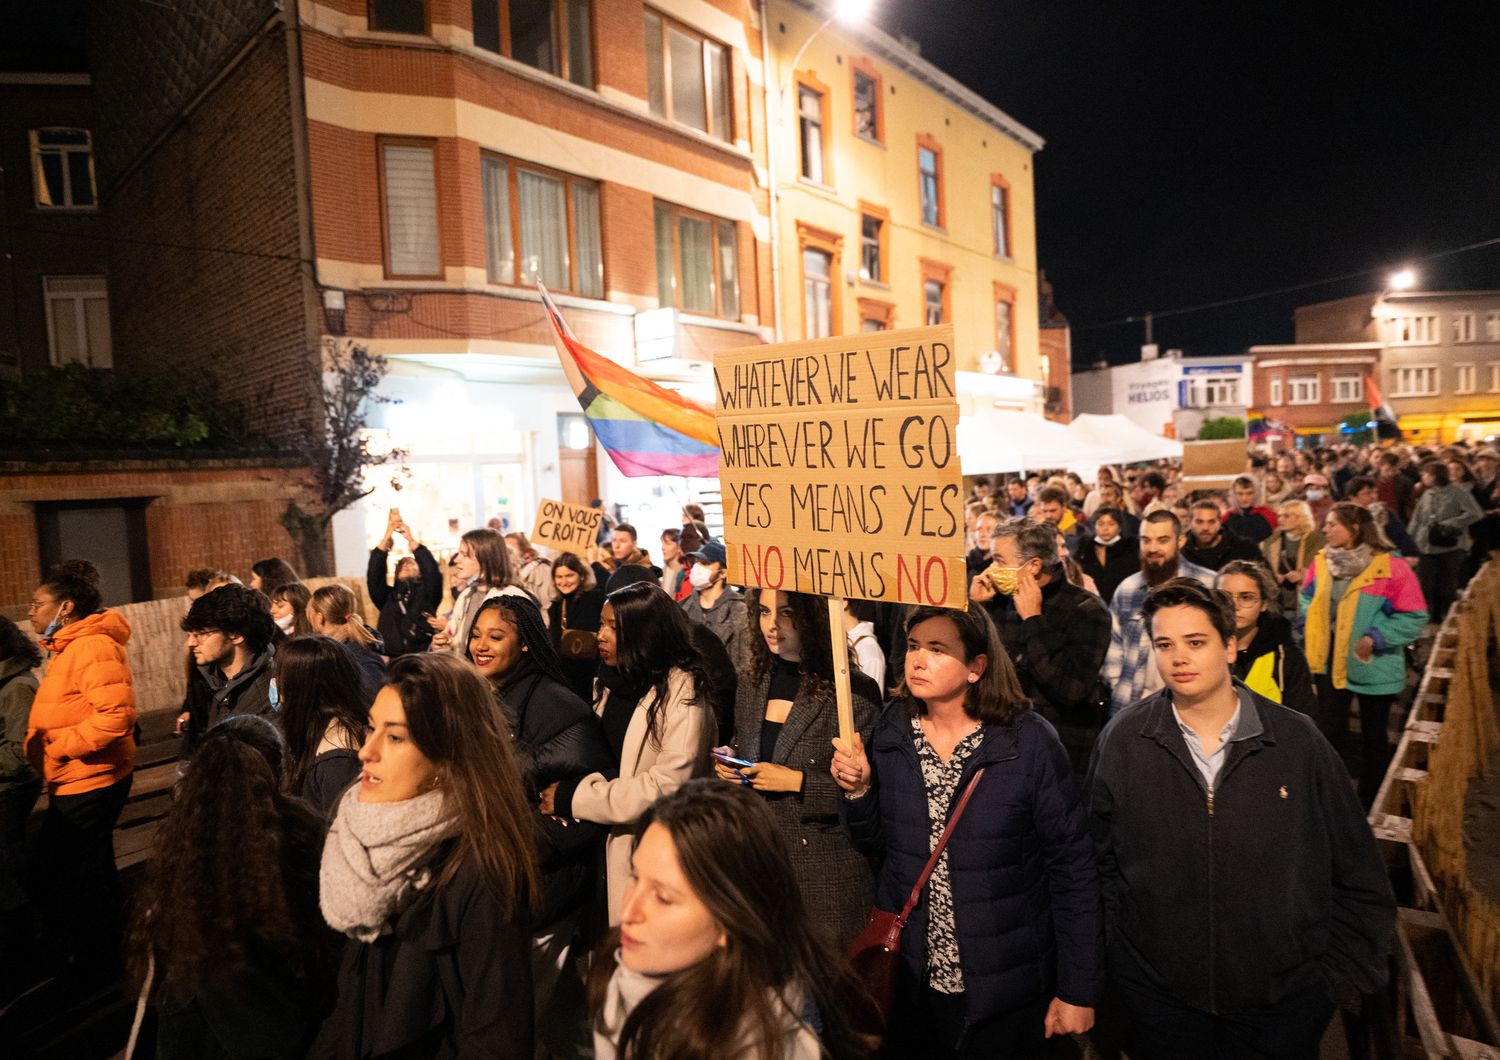 La manifestazione contro le aggressioni sessuali in Belgio